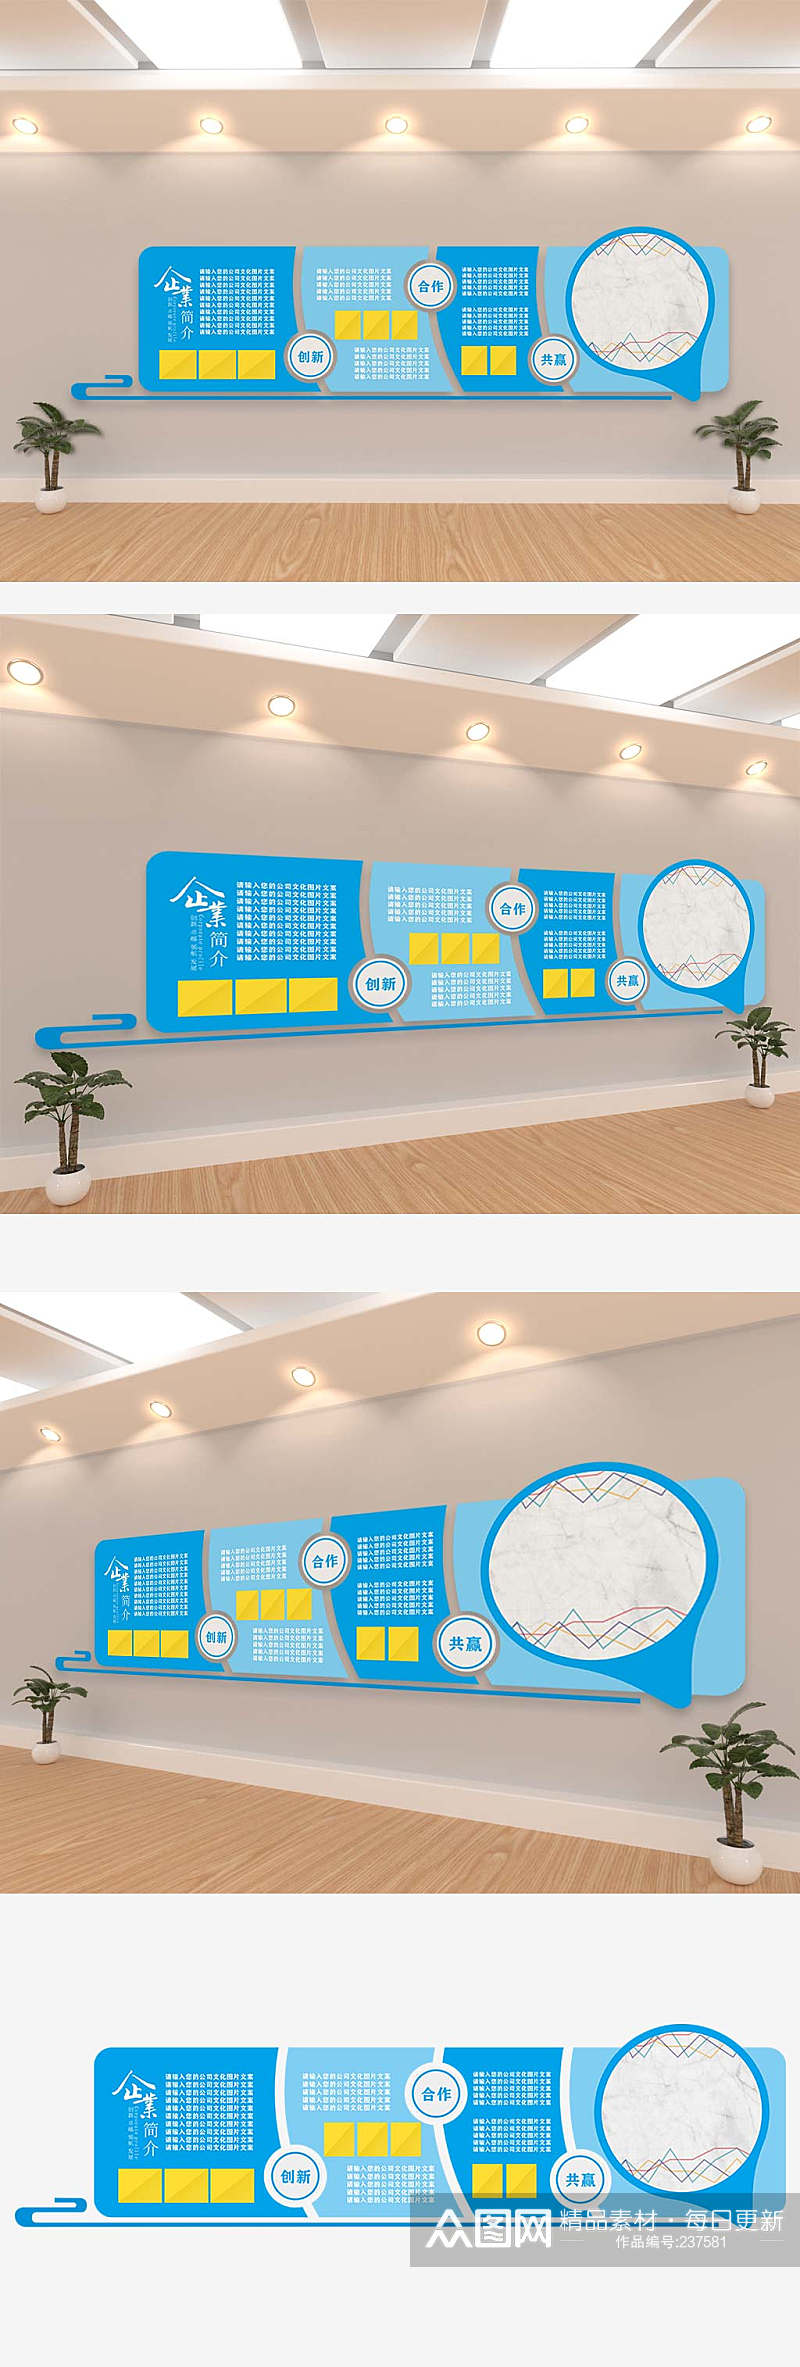 2020蓝色科技创新公司文化企业形象墙模板设计素材